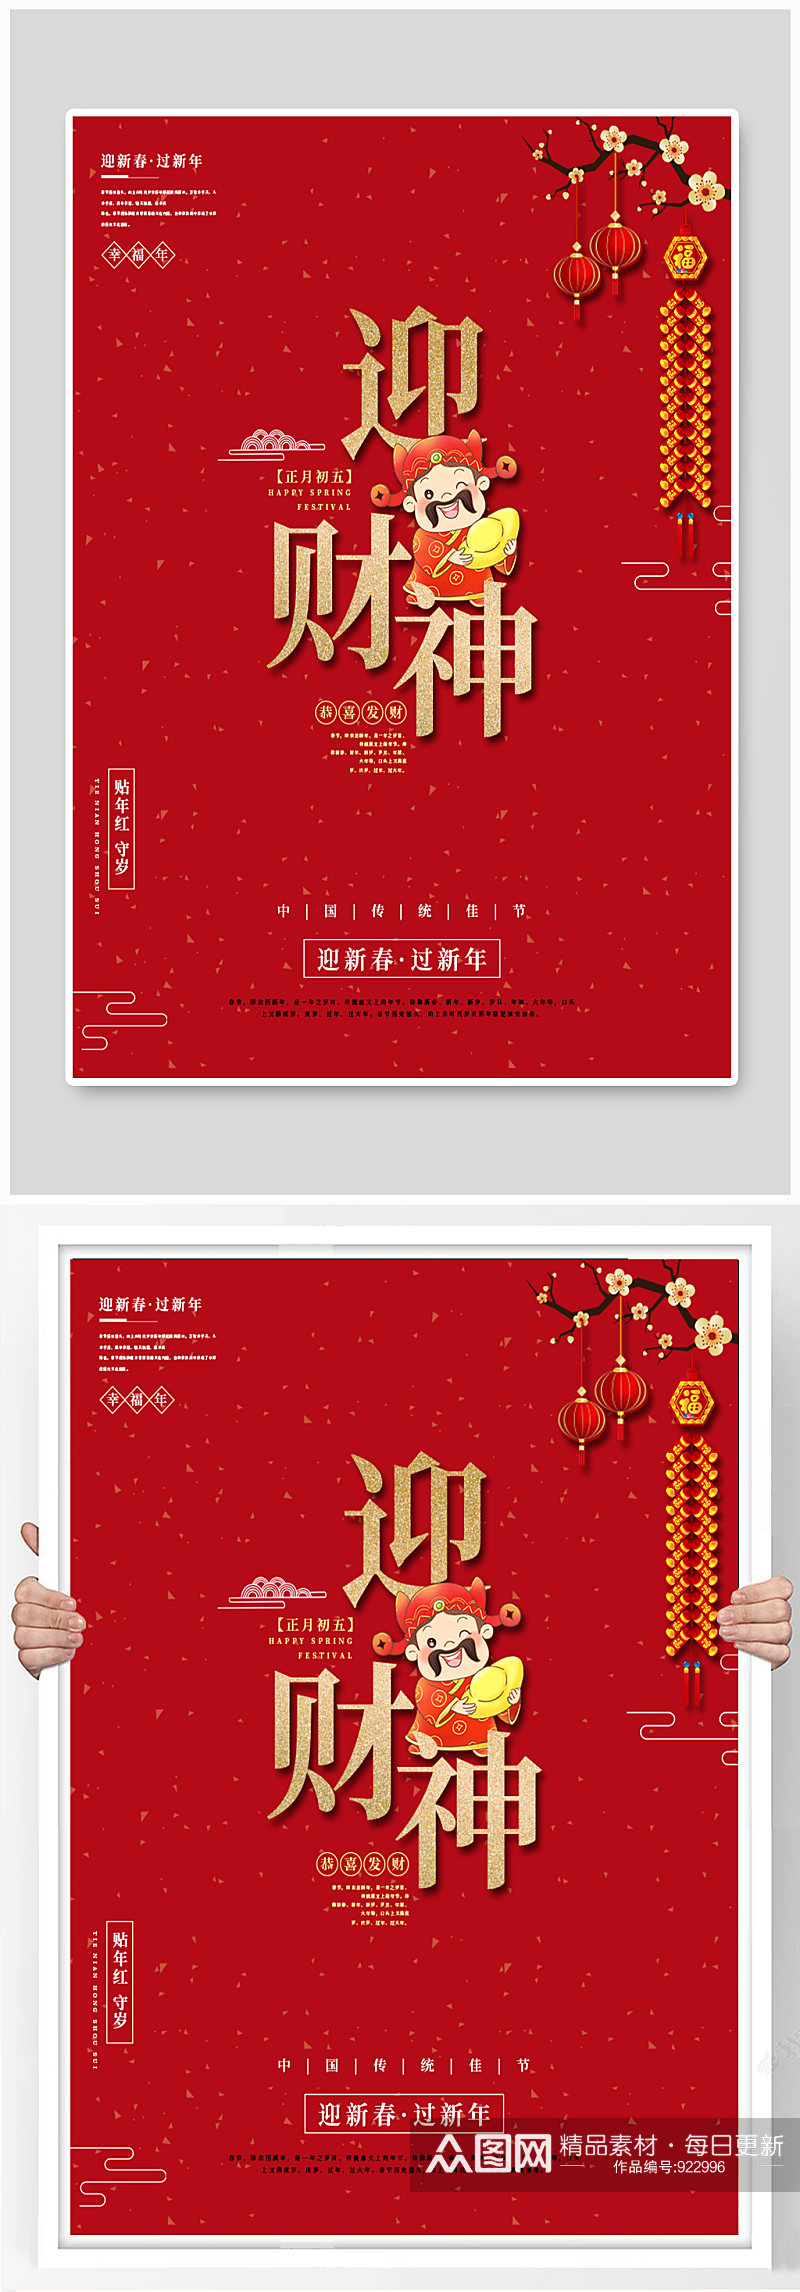 传统春节节日海报素材